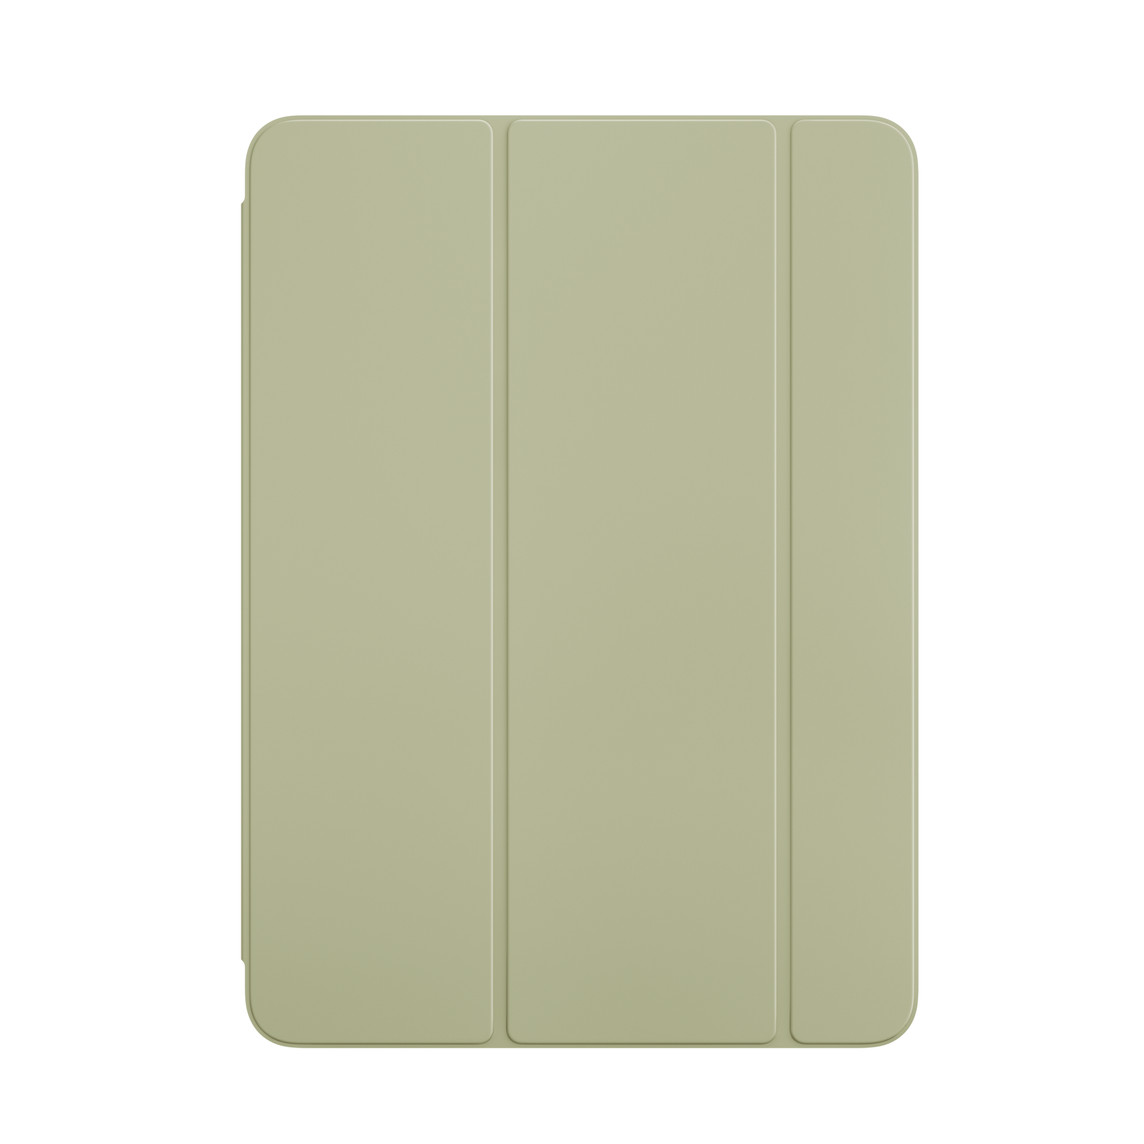 グリーンのiPad Air用Smart Folioの前面の外観。